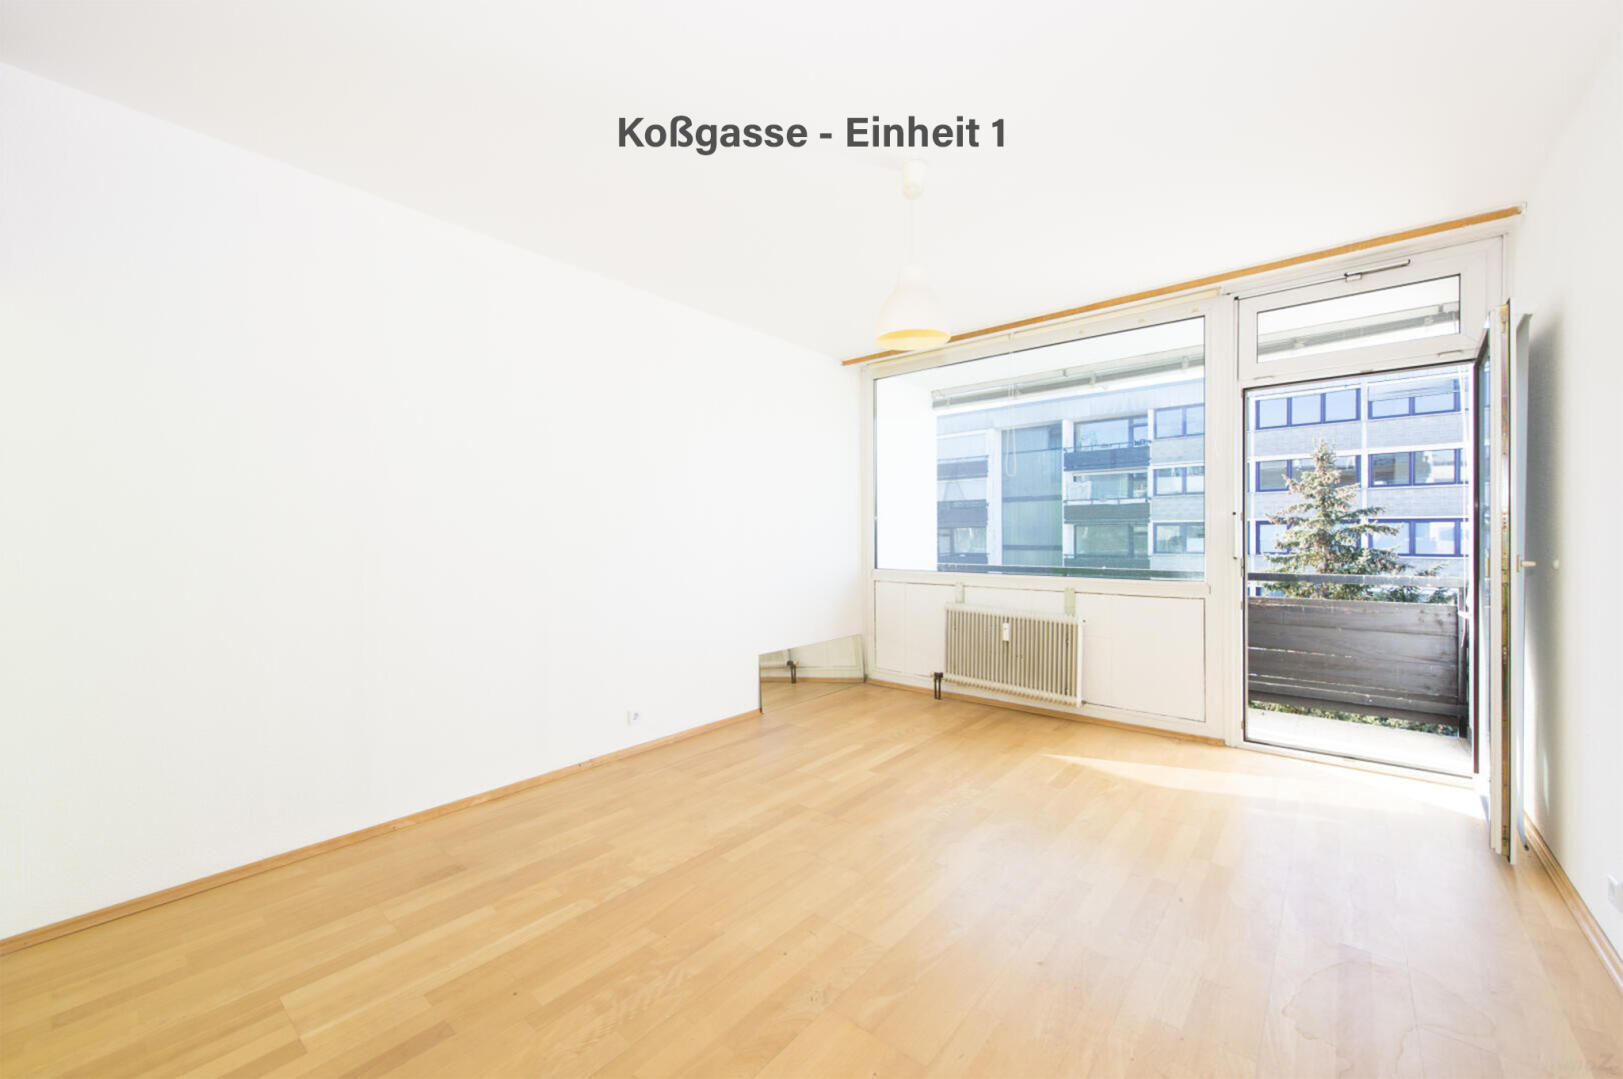 Wohnung zu kaufen: Koßgasse, 8010 Graz - Koßgasse - Einheit 1